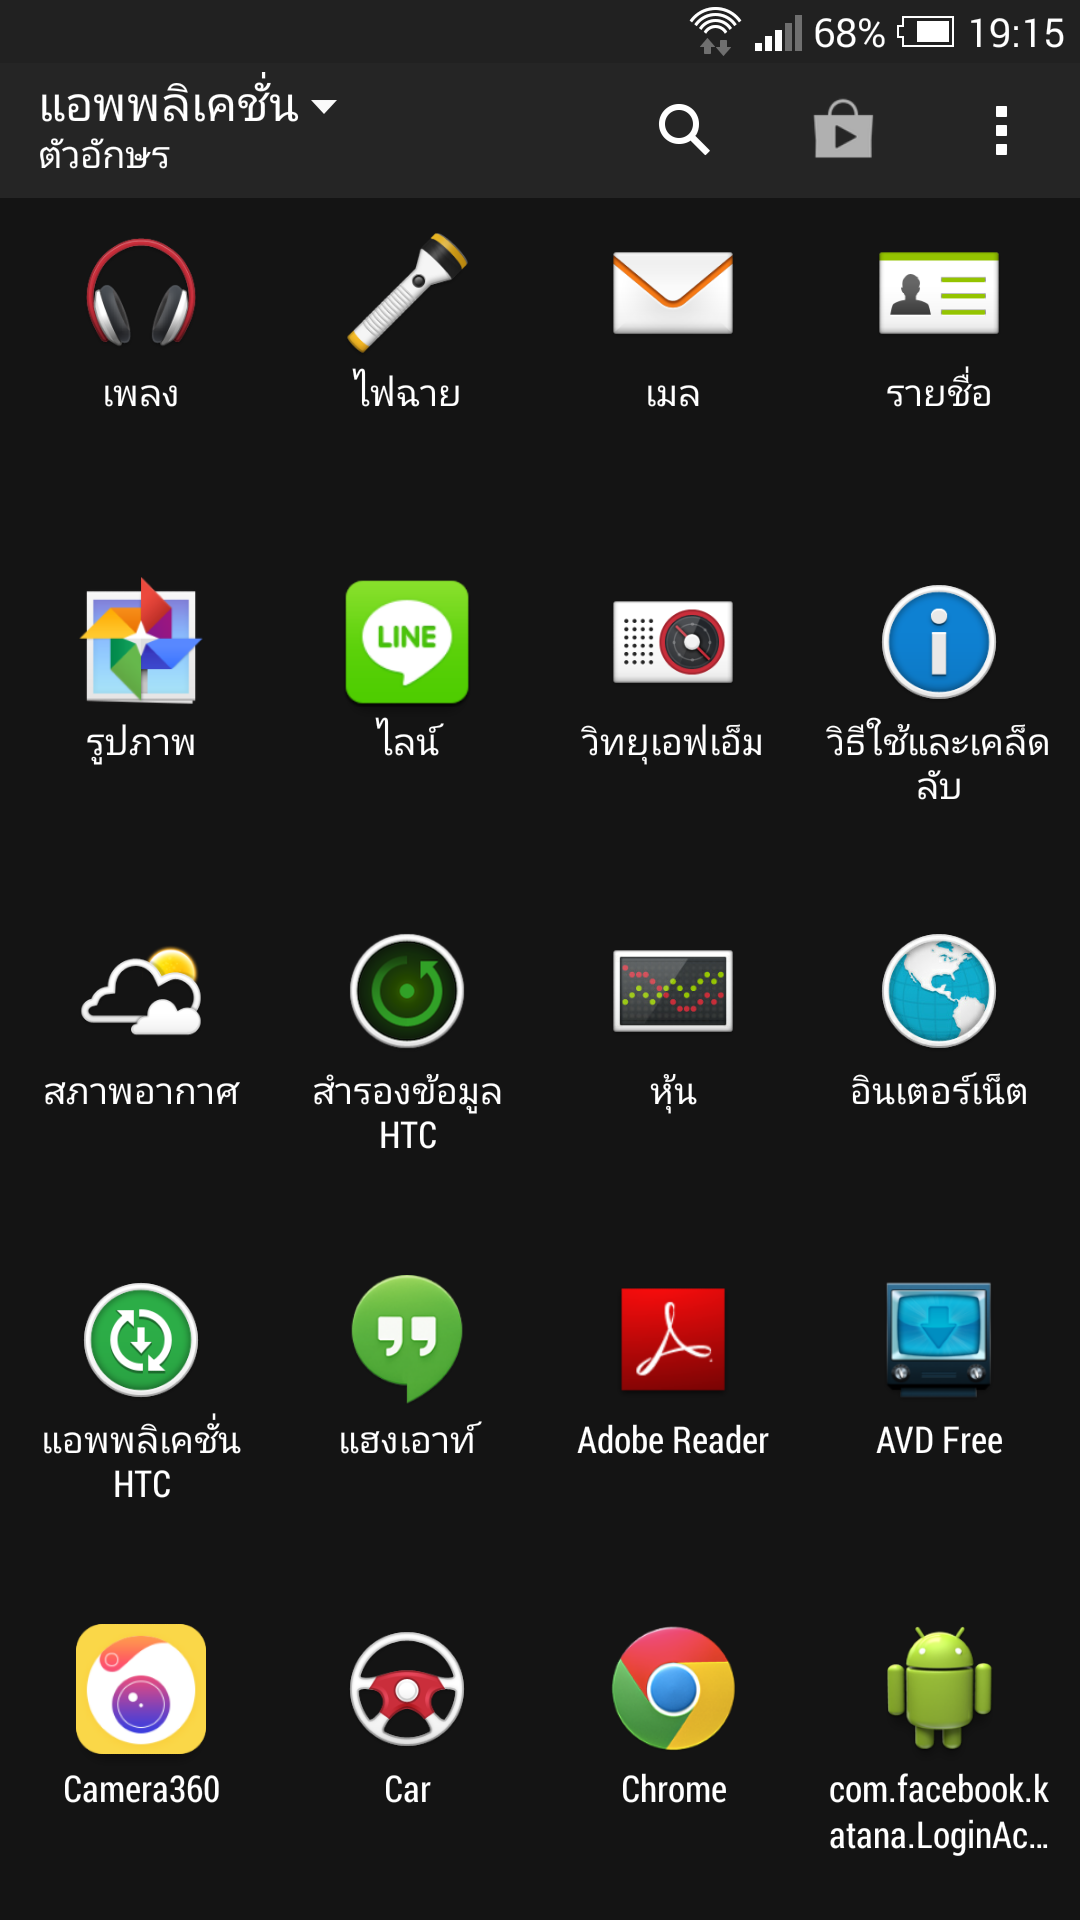 แอพที่เป็นรูป Android ตัวเขียวๆ มันคืออะไรคะ พยายามลบมันไม่ได้ค่ะ - Pantip